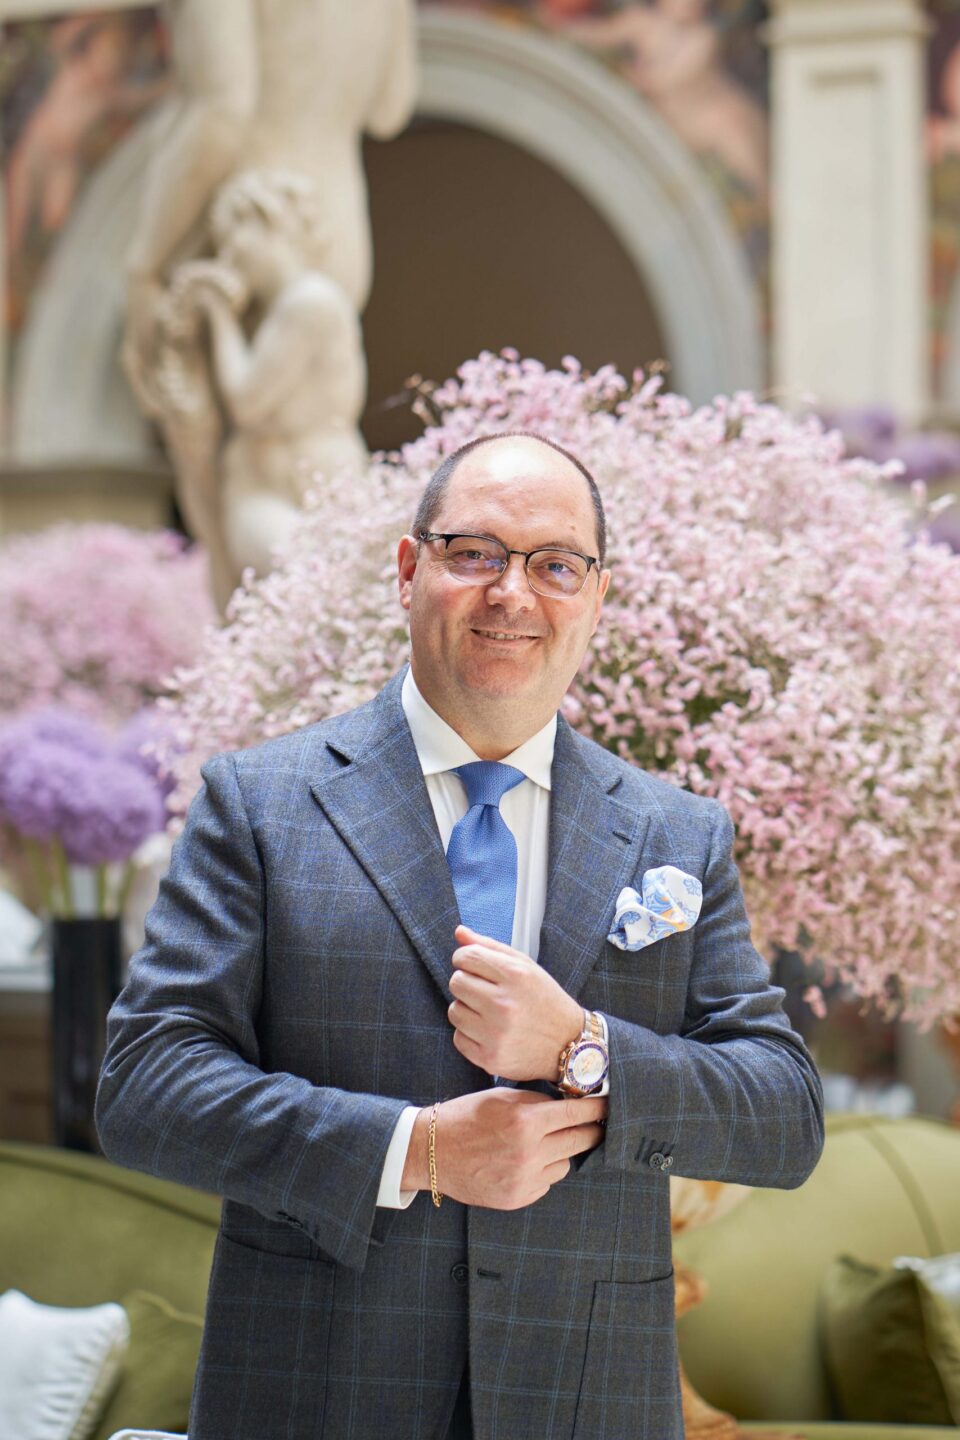 Migliori hotel italiani: Four Seasons Firenze tra le 100 Eccellenze Italiane per Forbes